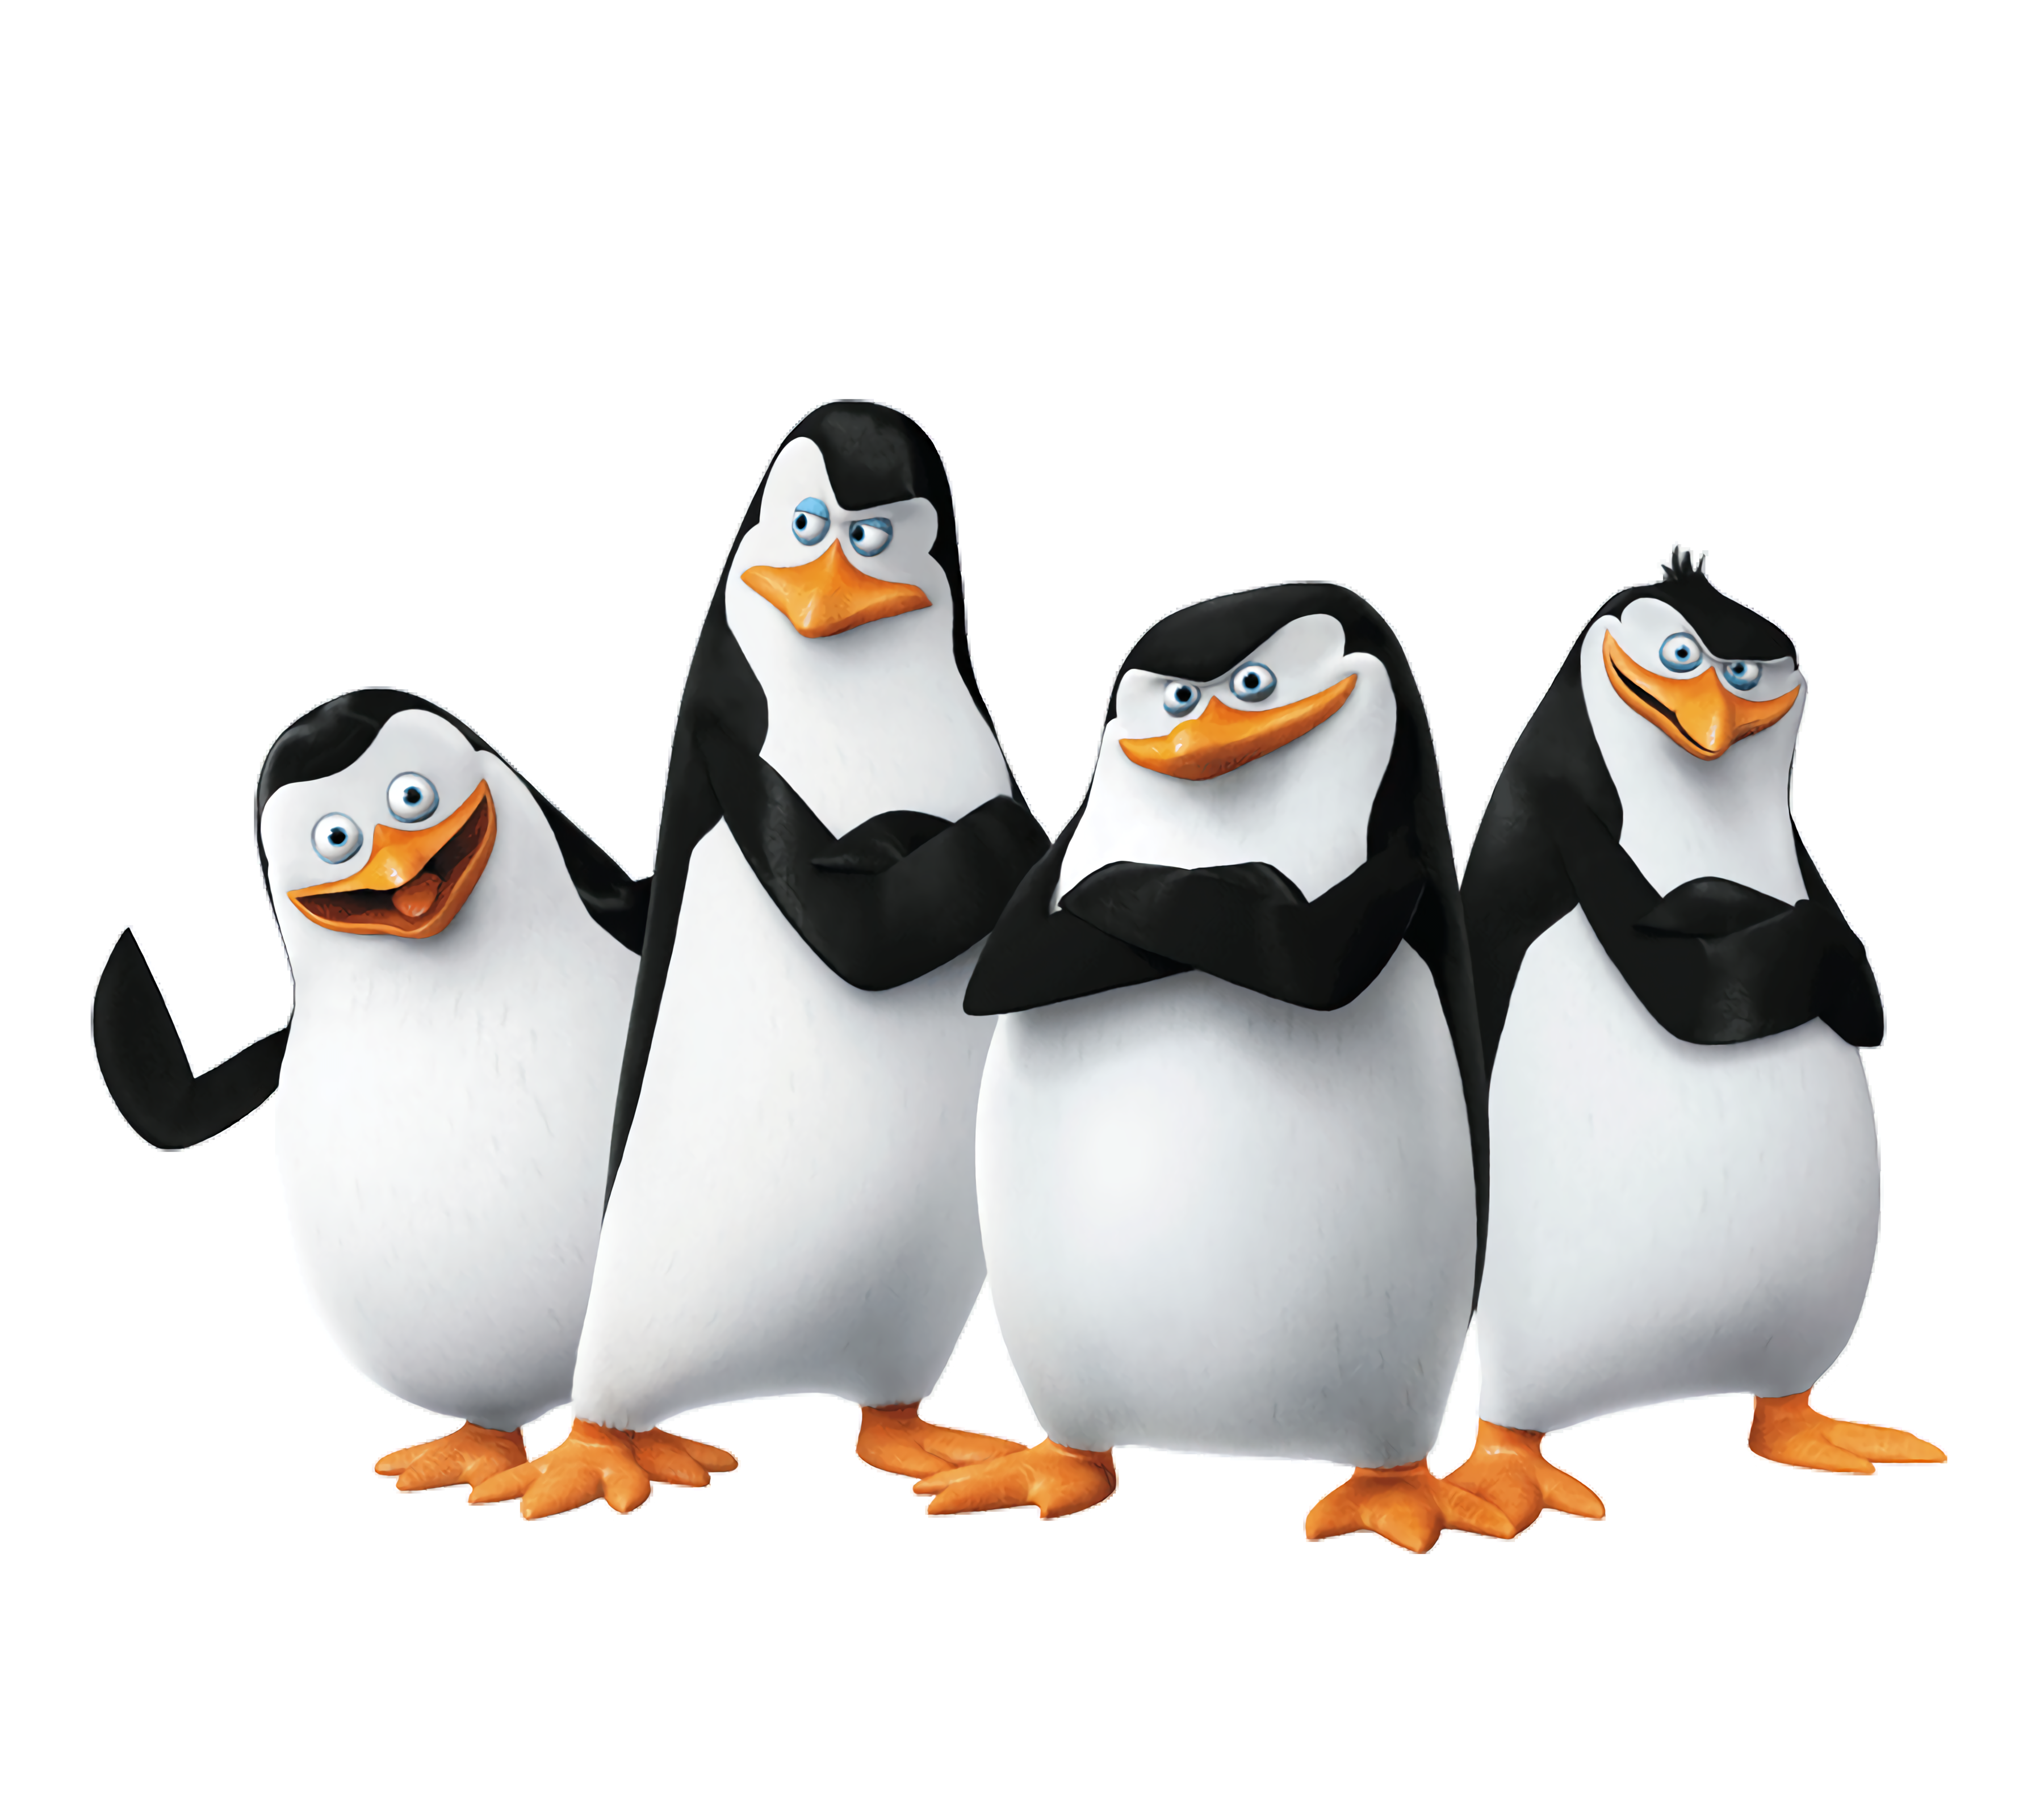 Pingvin játékok